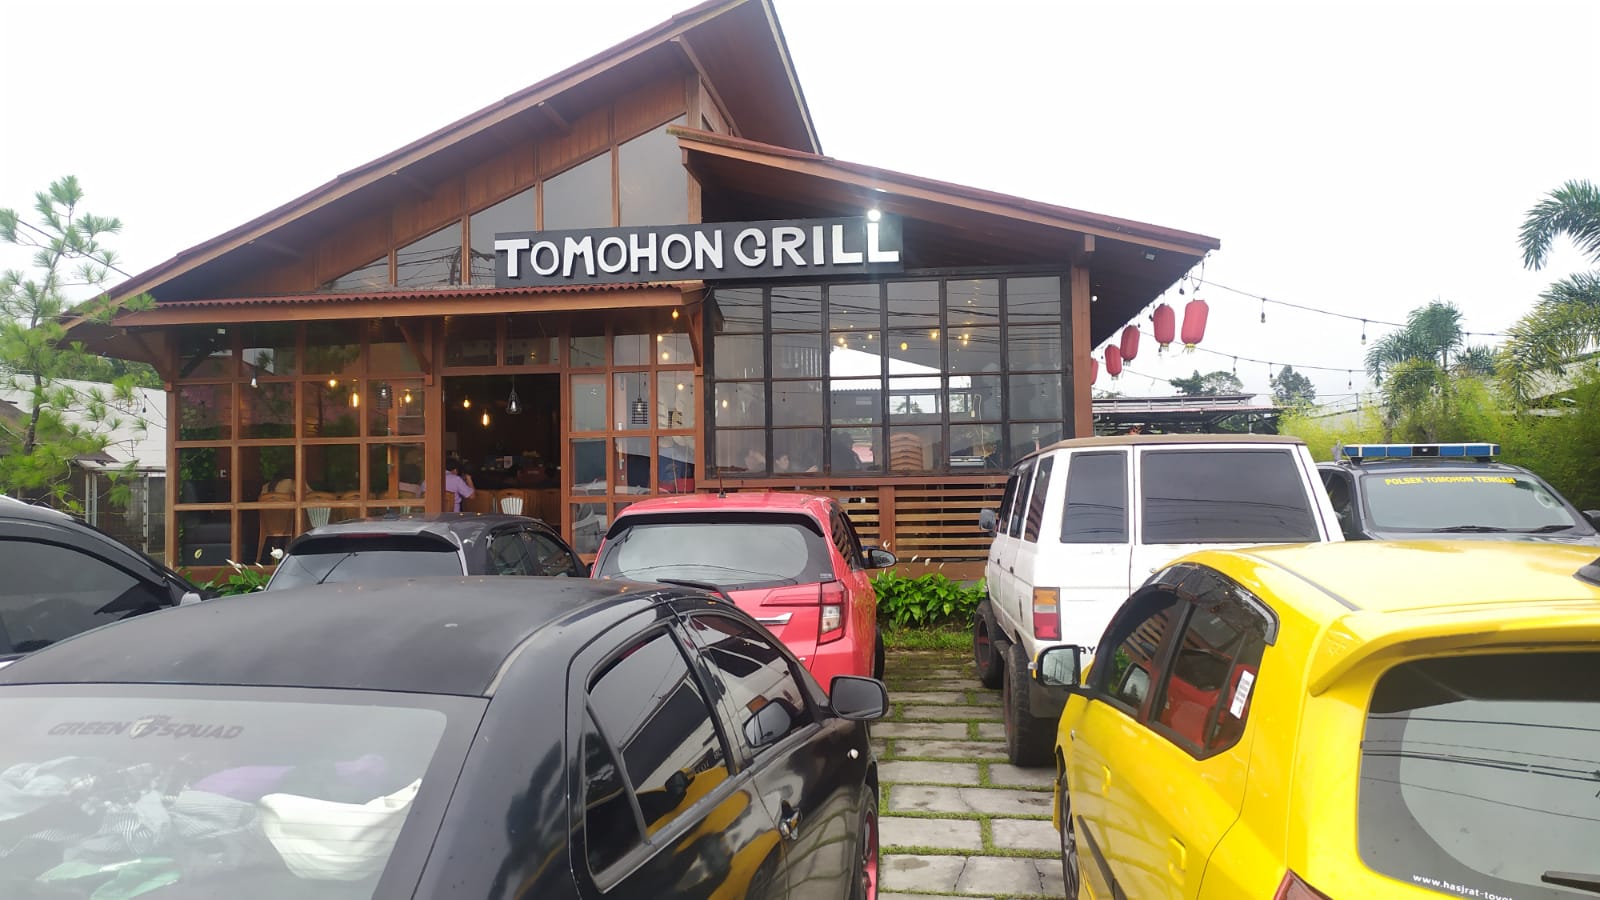 Tomohon Grill Tempatnya Kuliner Daging Bakar